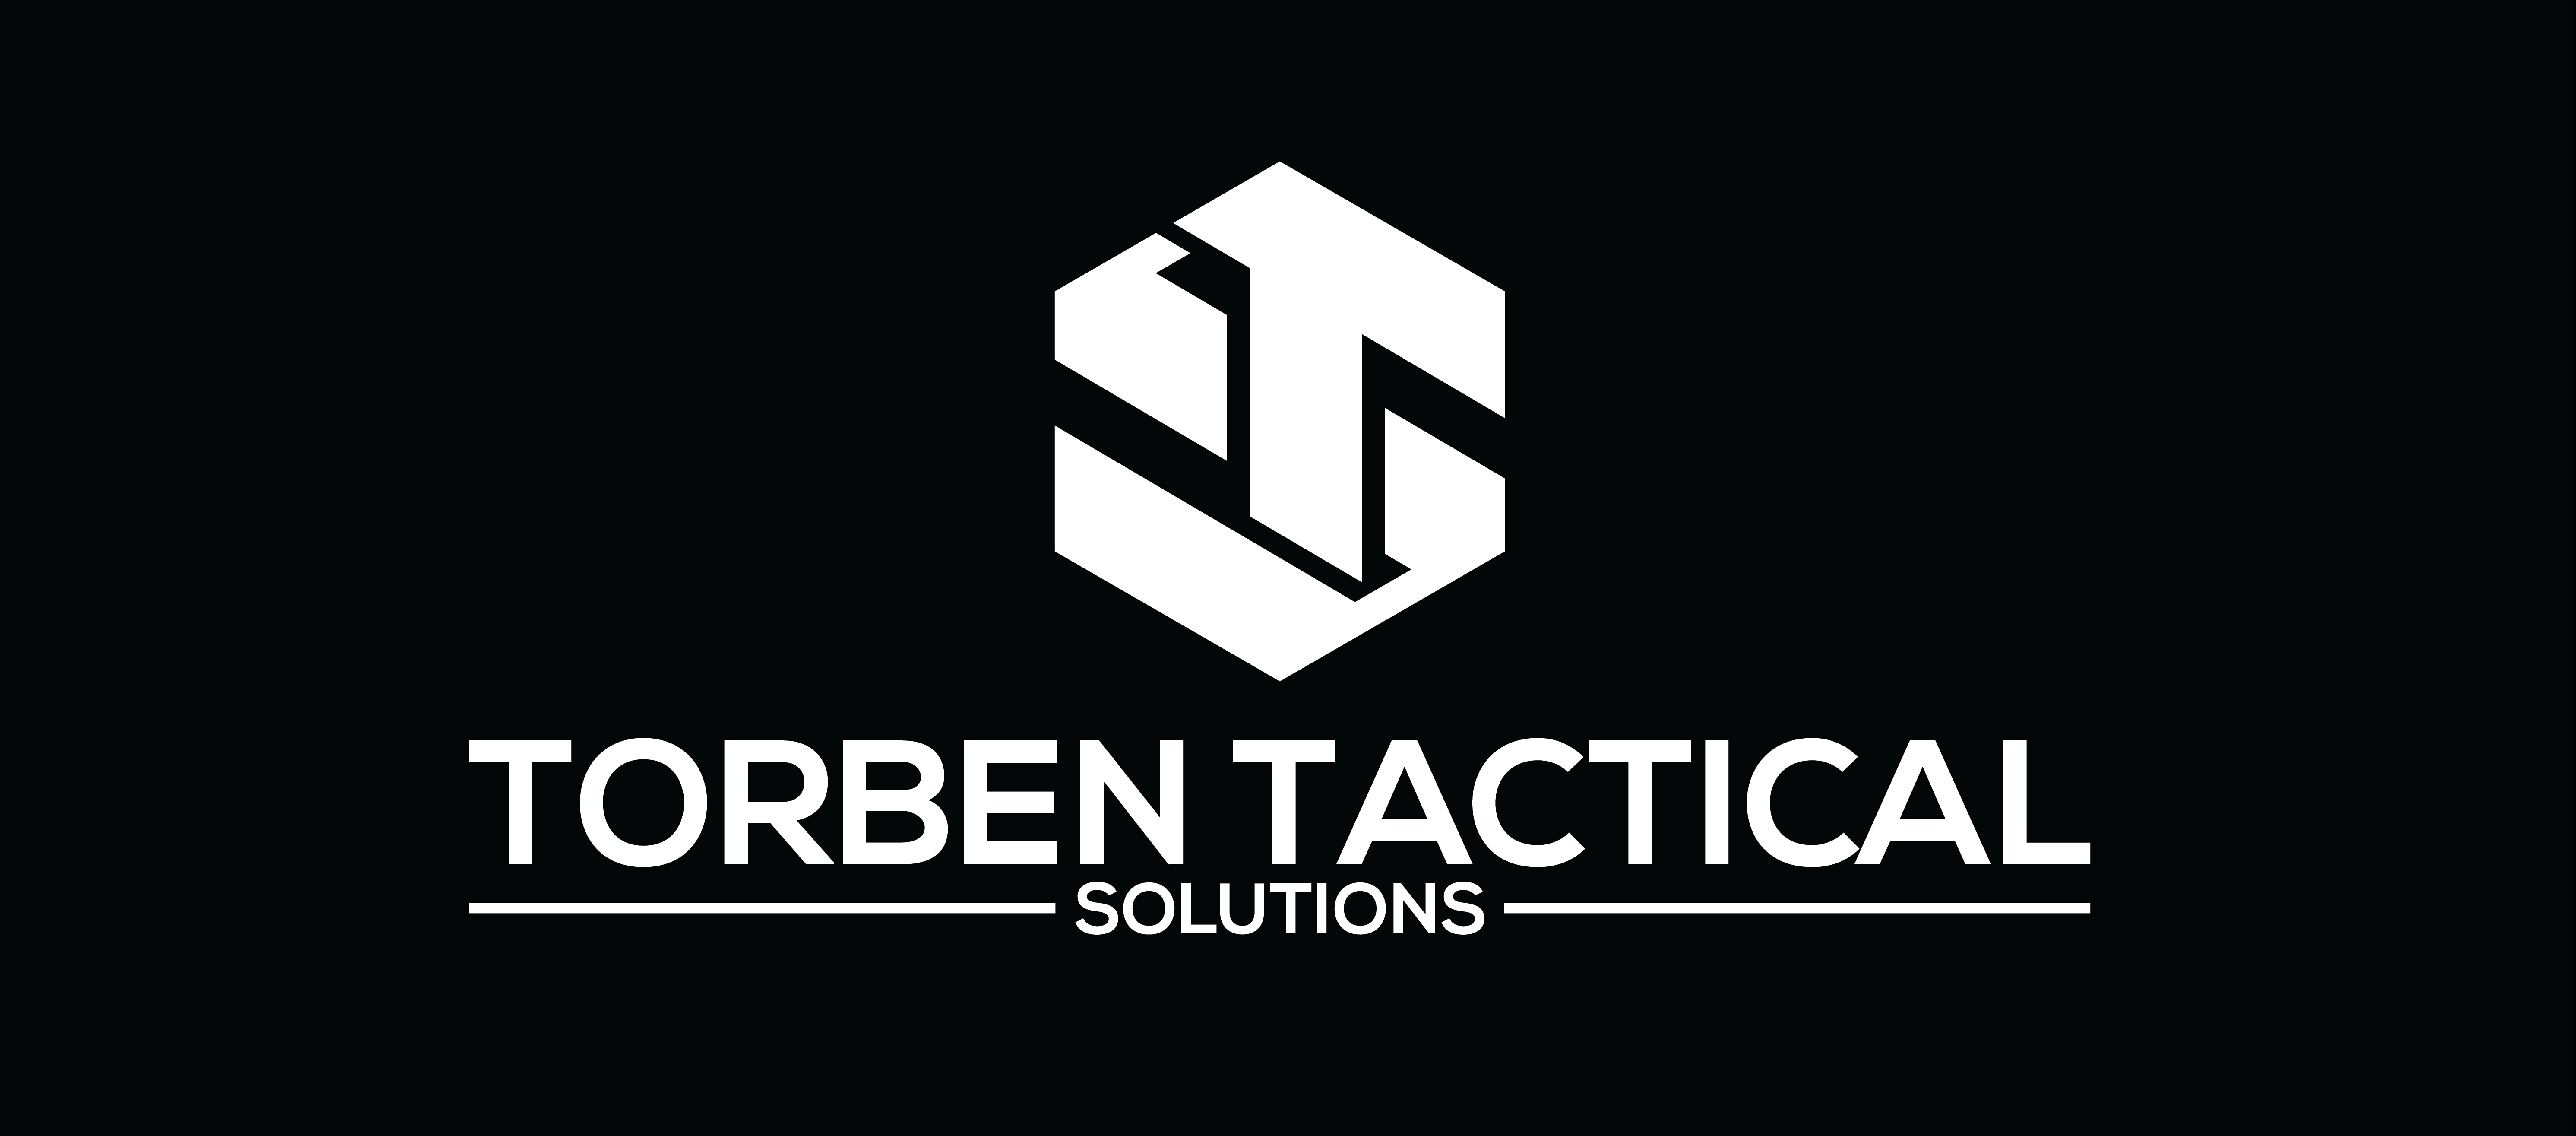 Torben Tactical Solutions